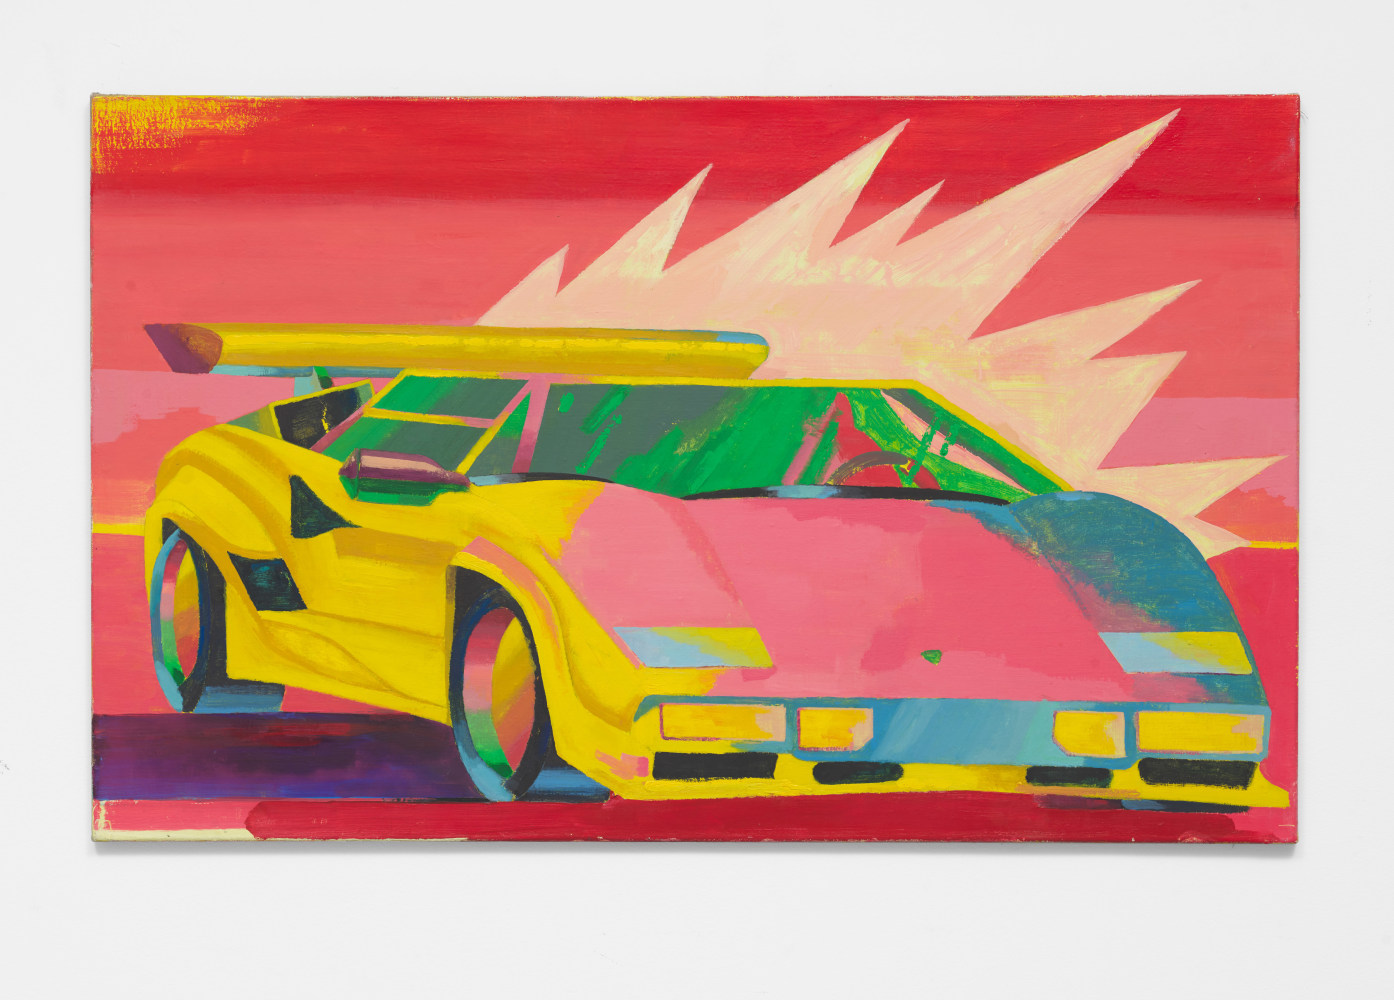 Car 1, 2019
Oil on canvas
35.43h x 57.09w in
90h x 145w cm